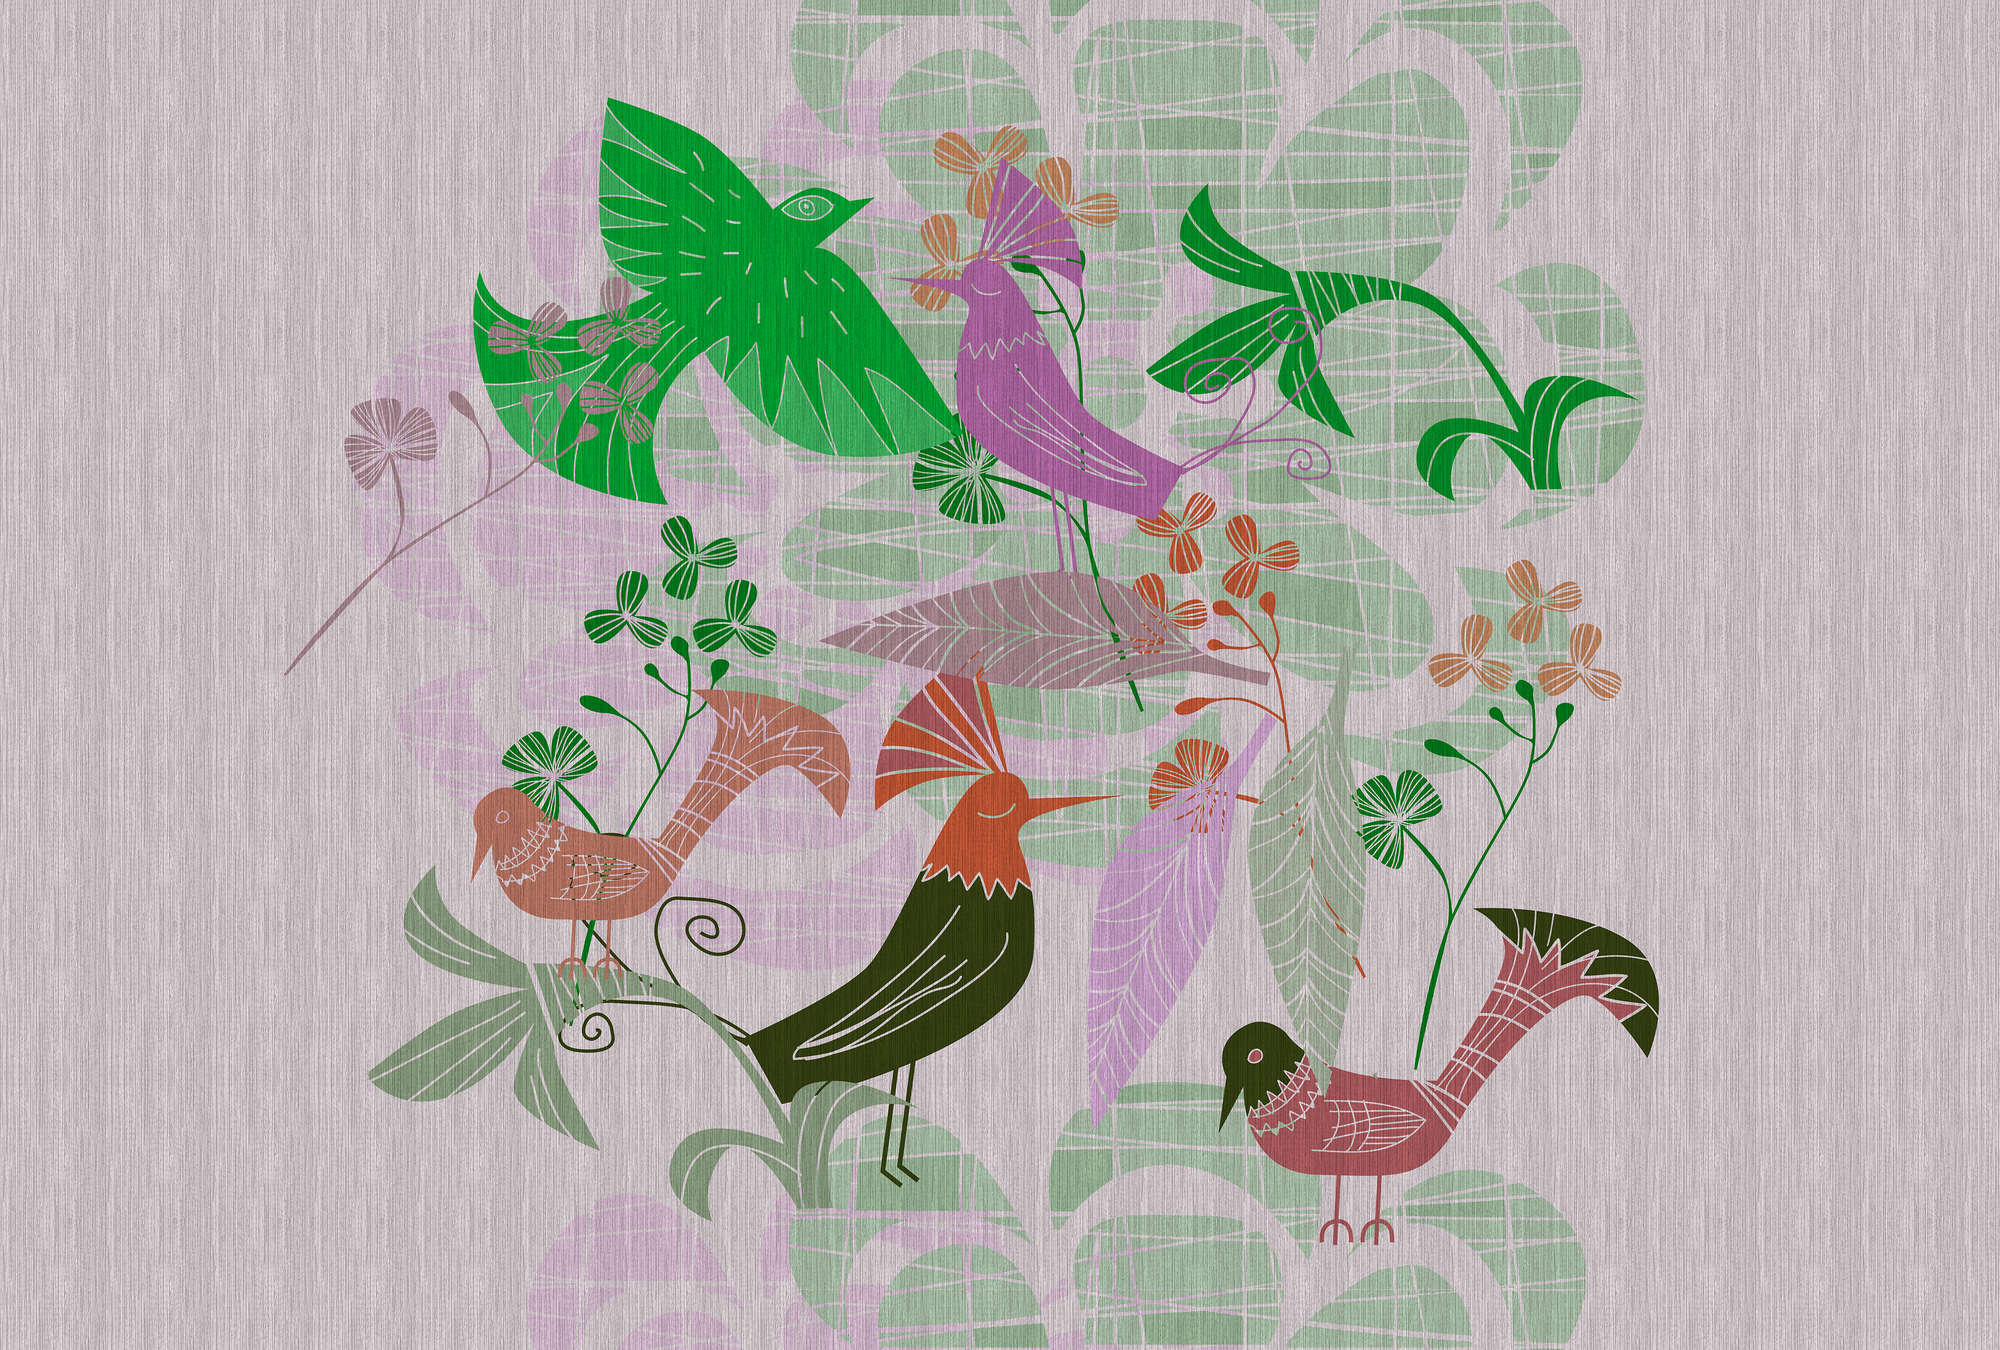             Birdland 2 - Papel pintado con motivos de pájaros retro de estilo escandinavo
        